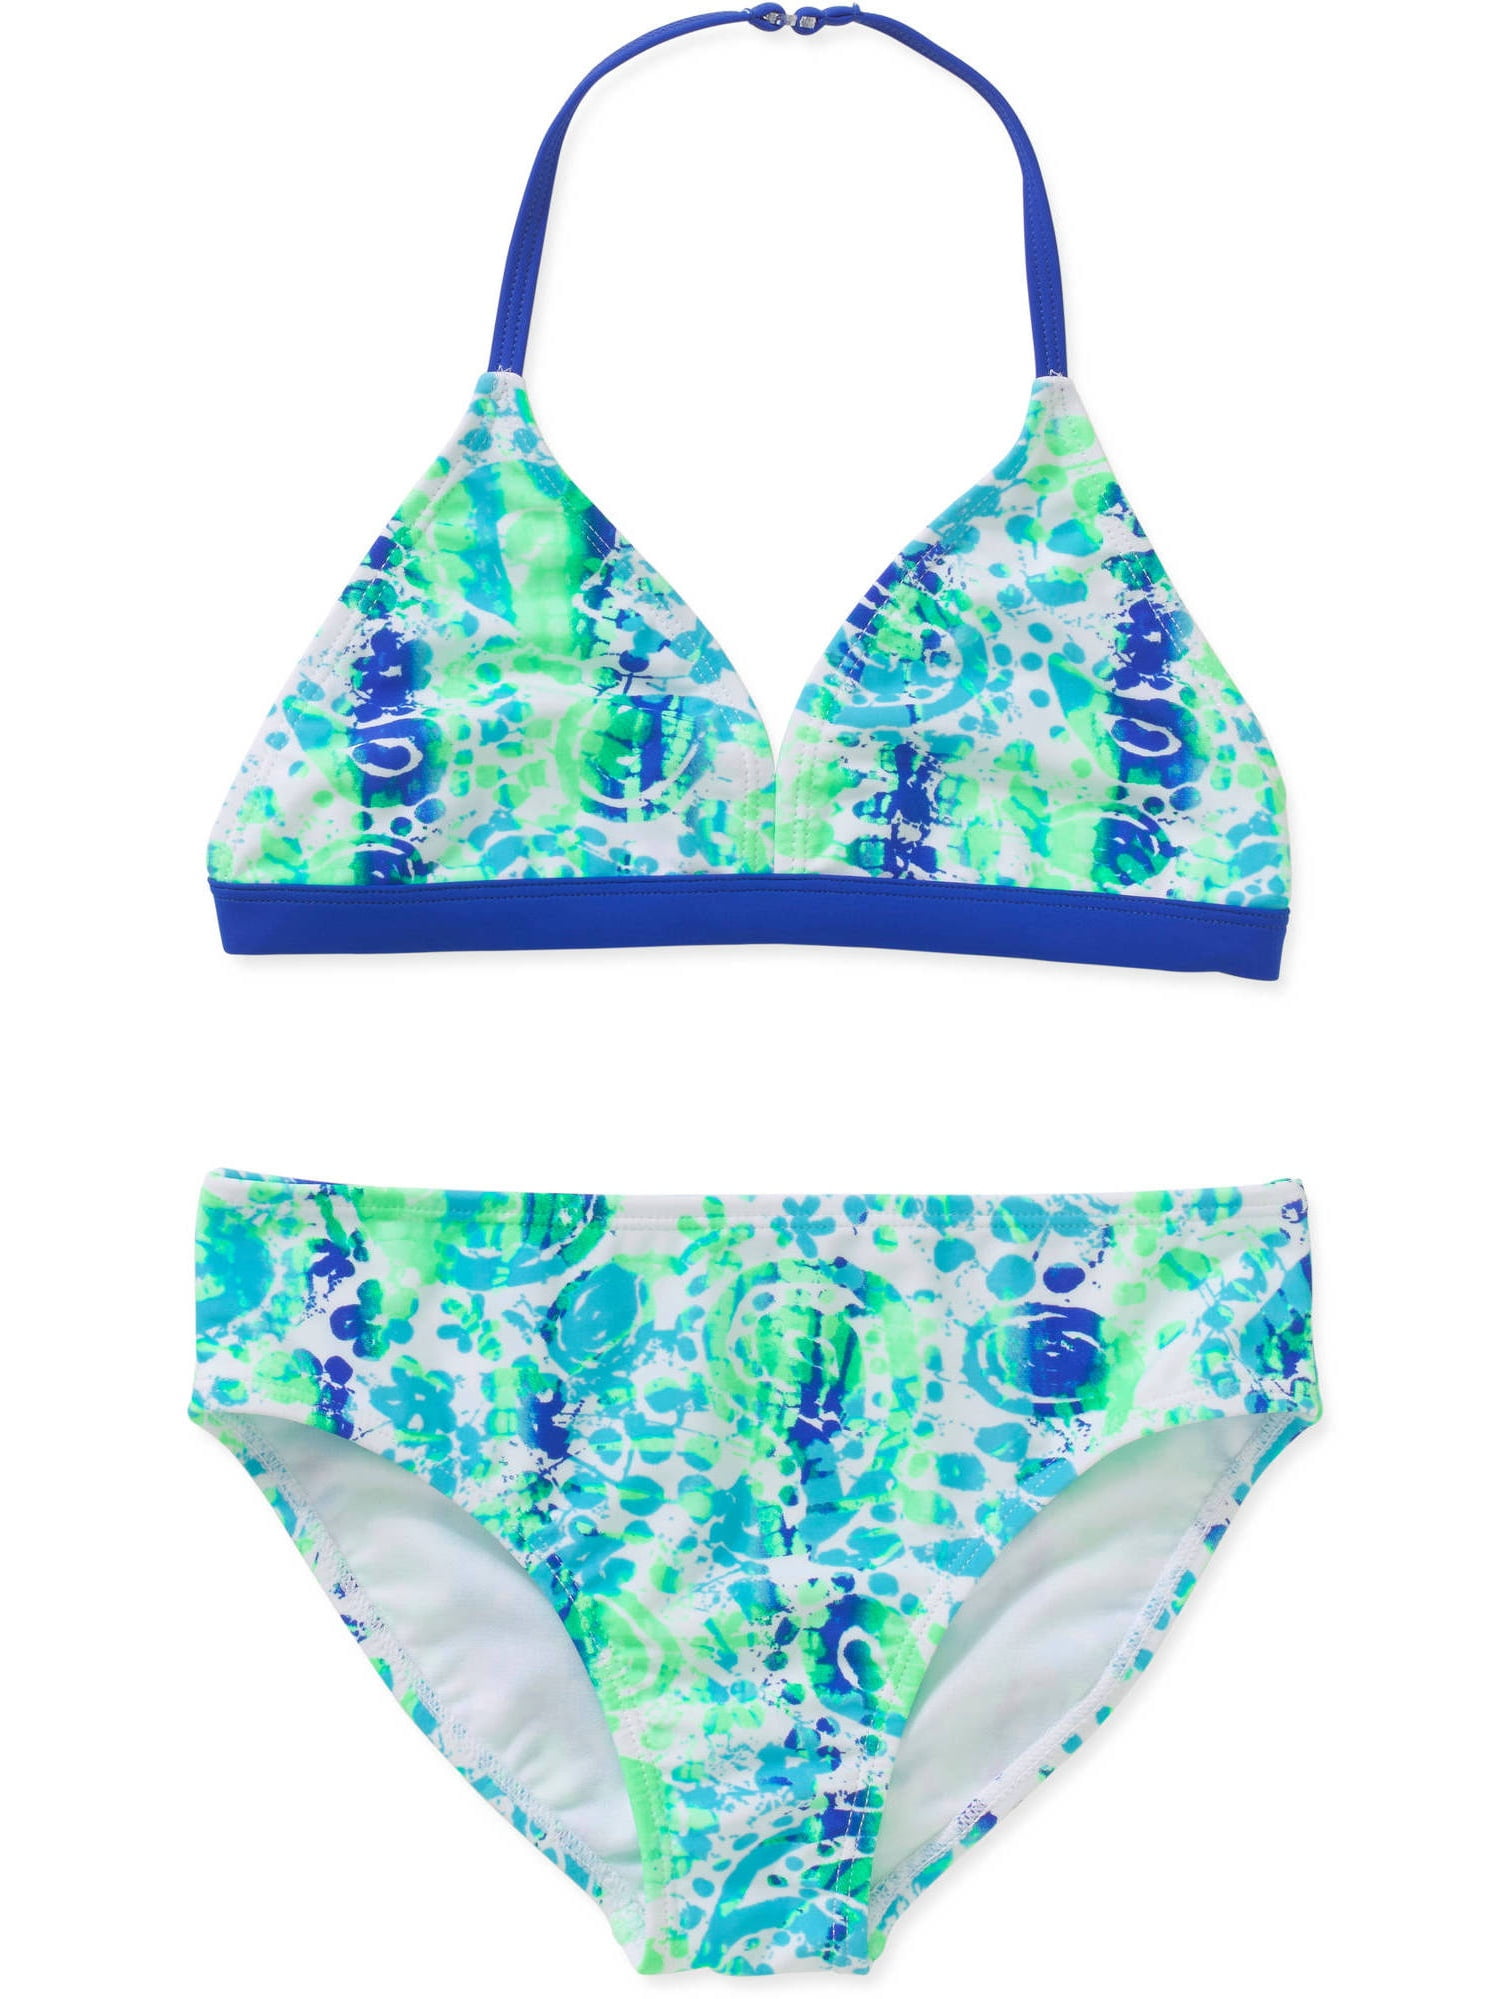 Circo Bikini Swim Bottom Bathing Suits Girl Tie Dye Blue SIZE XL 14/16 